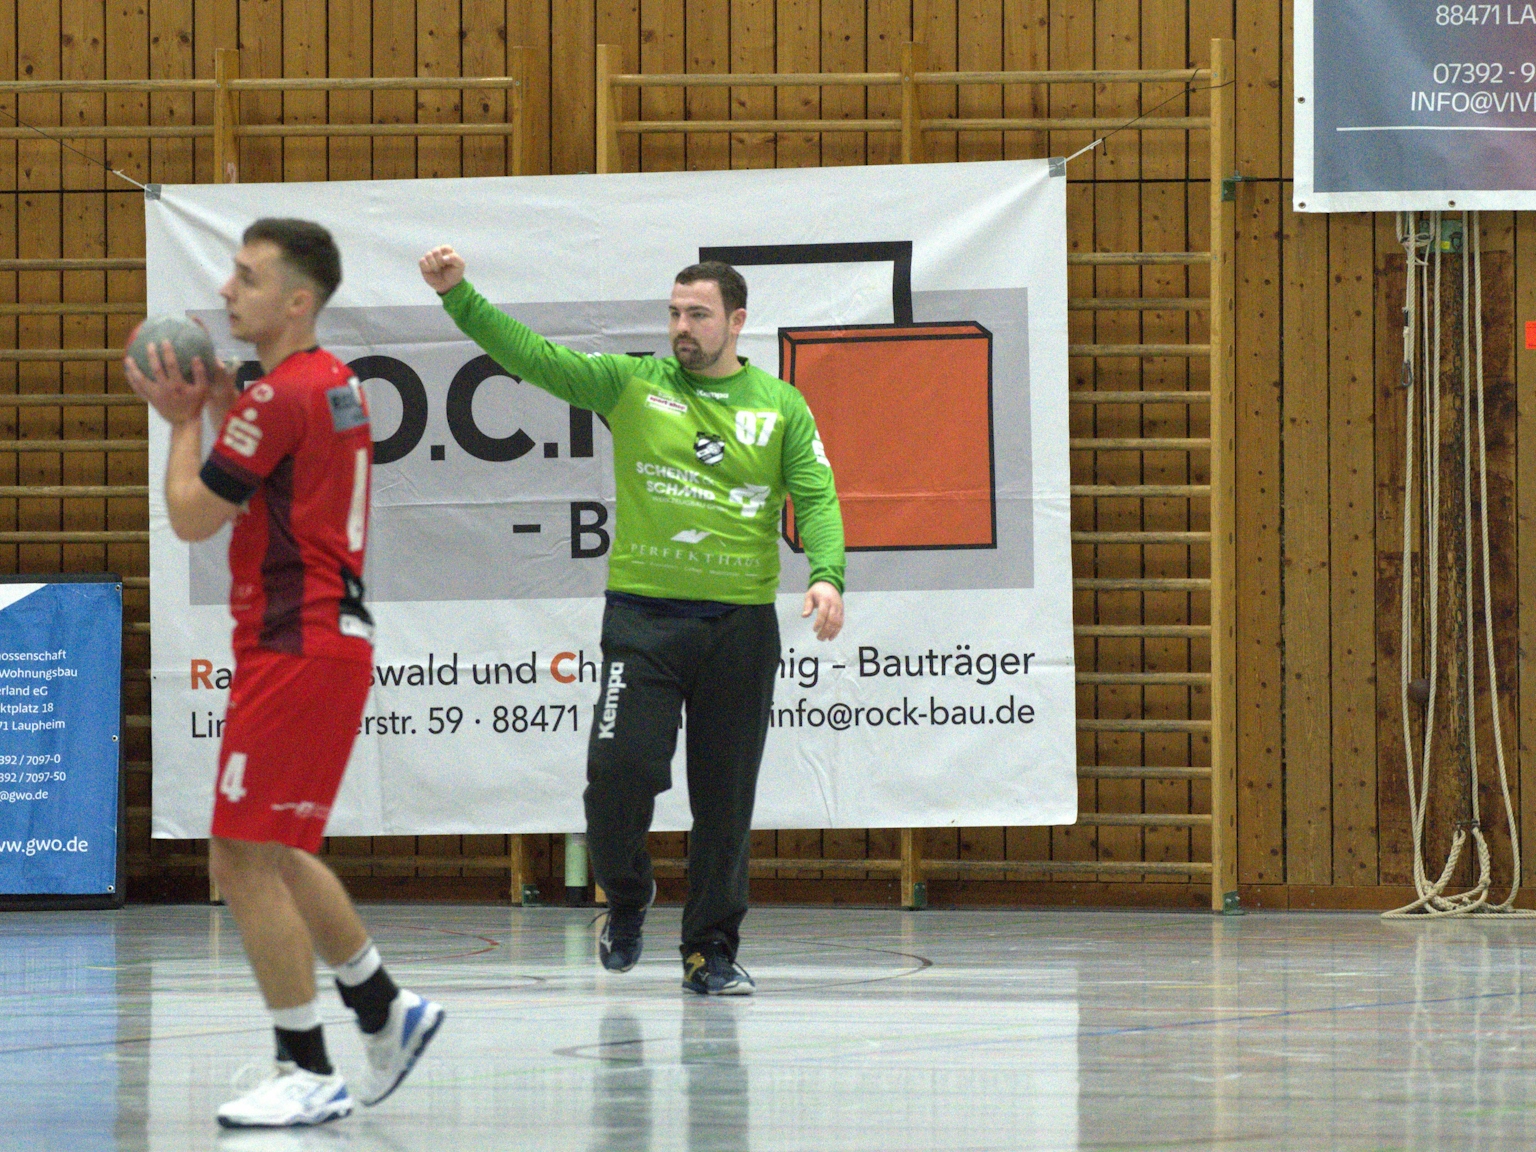 Handballspieler des HRW-Laupheim auf der linken Seite des Bildes in Ballbesitz. Im Zentrum läuft der Torwart mit erhobener Faust. Im Hintergrund sind Sponsorenplakate zu sehen